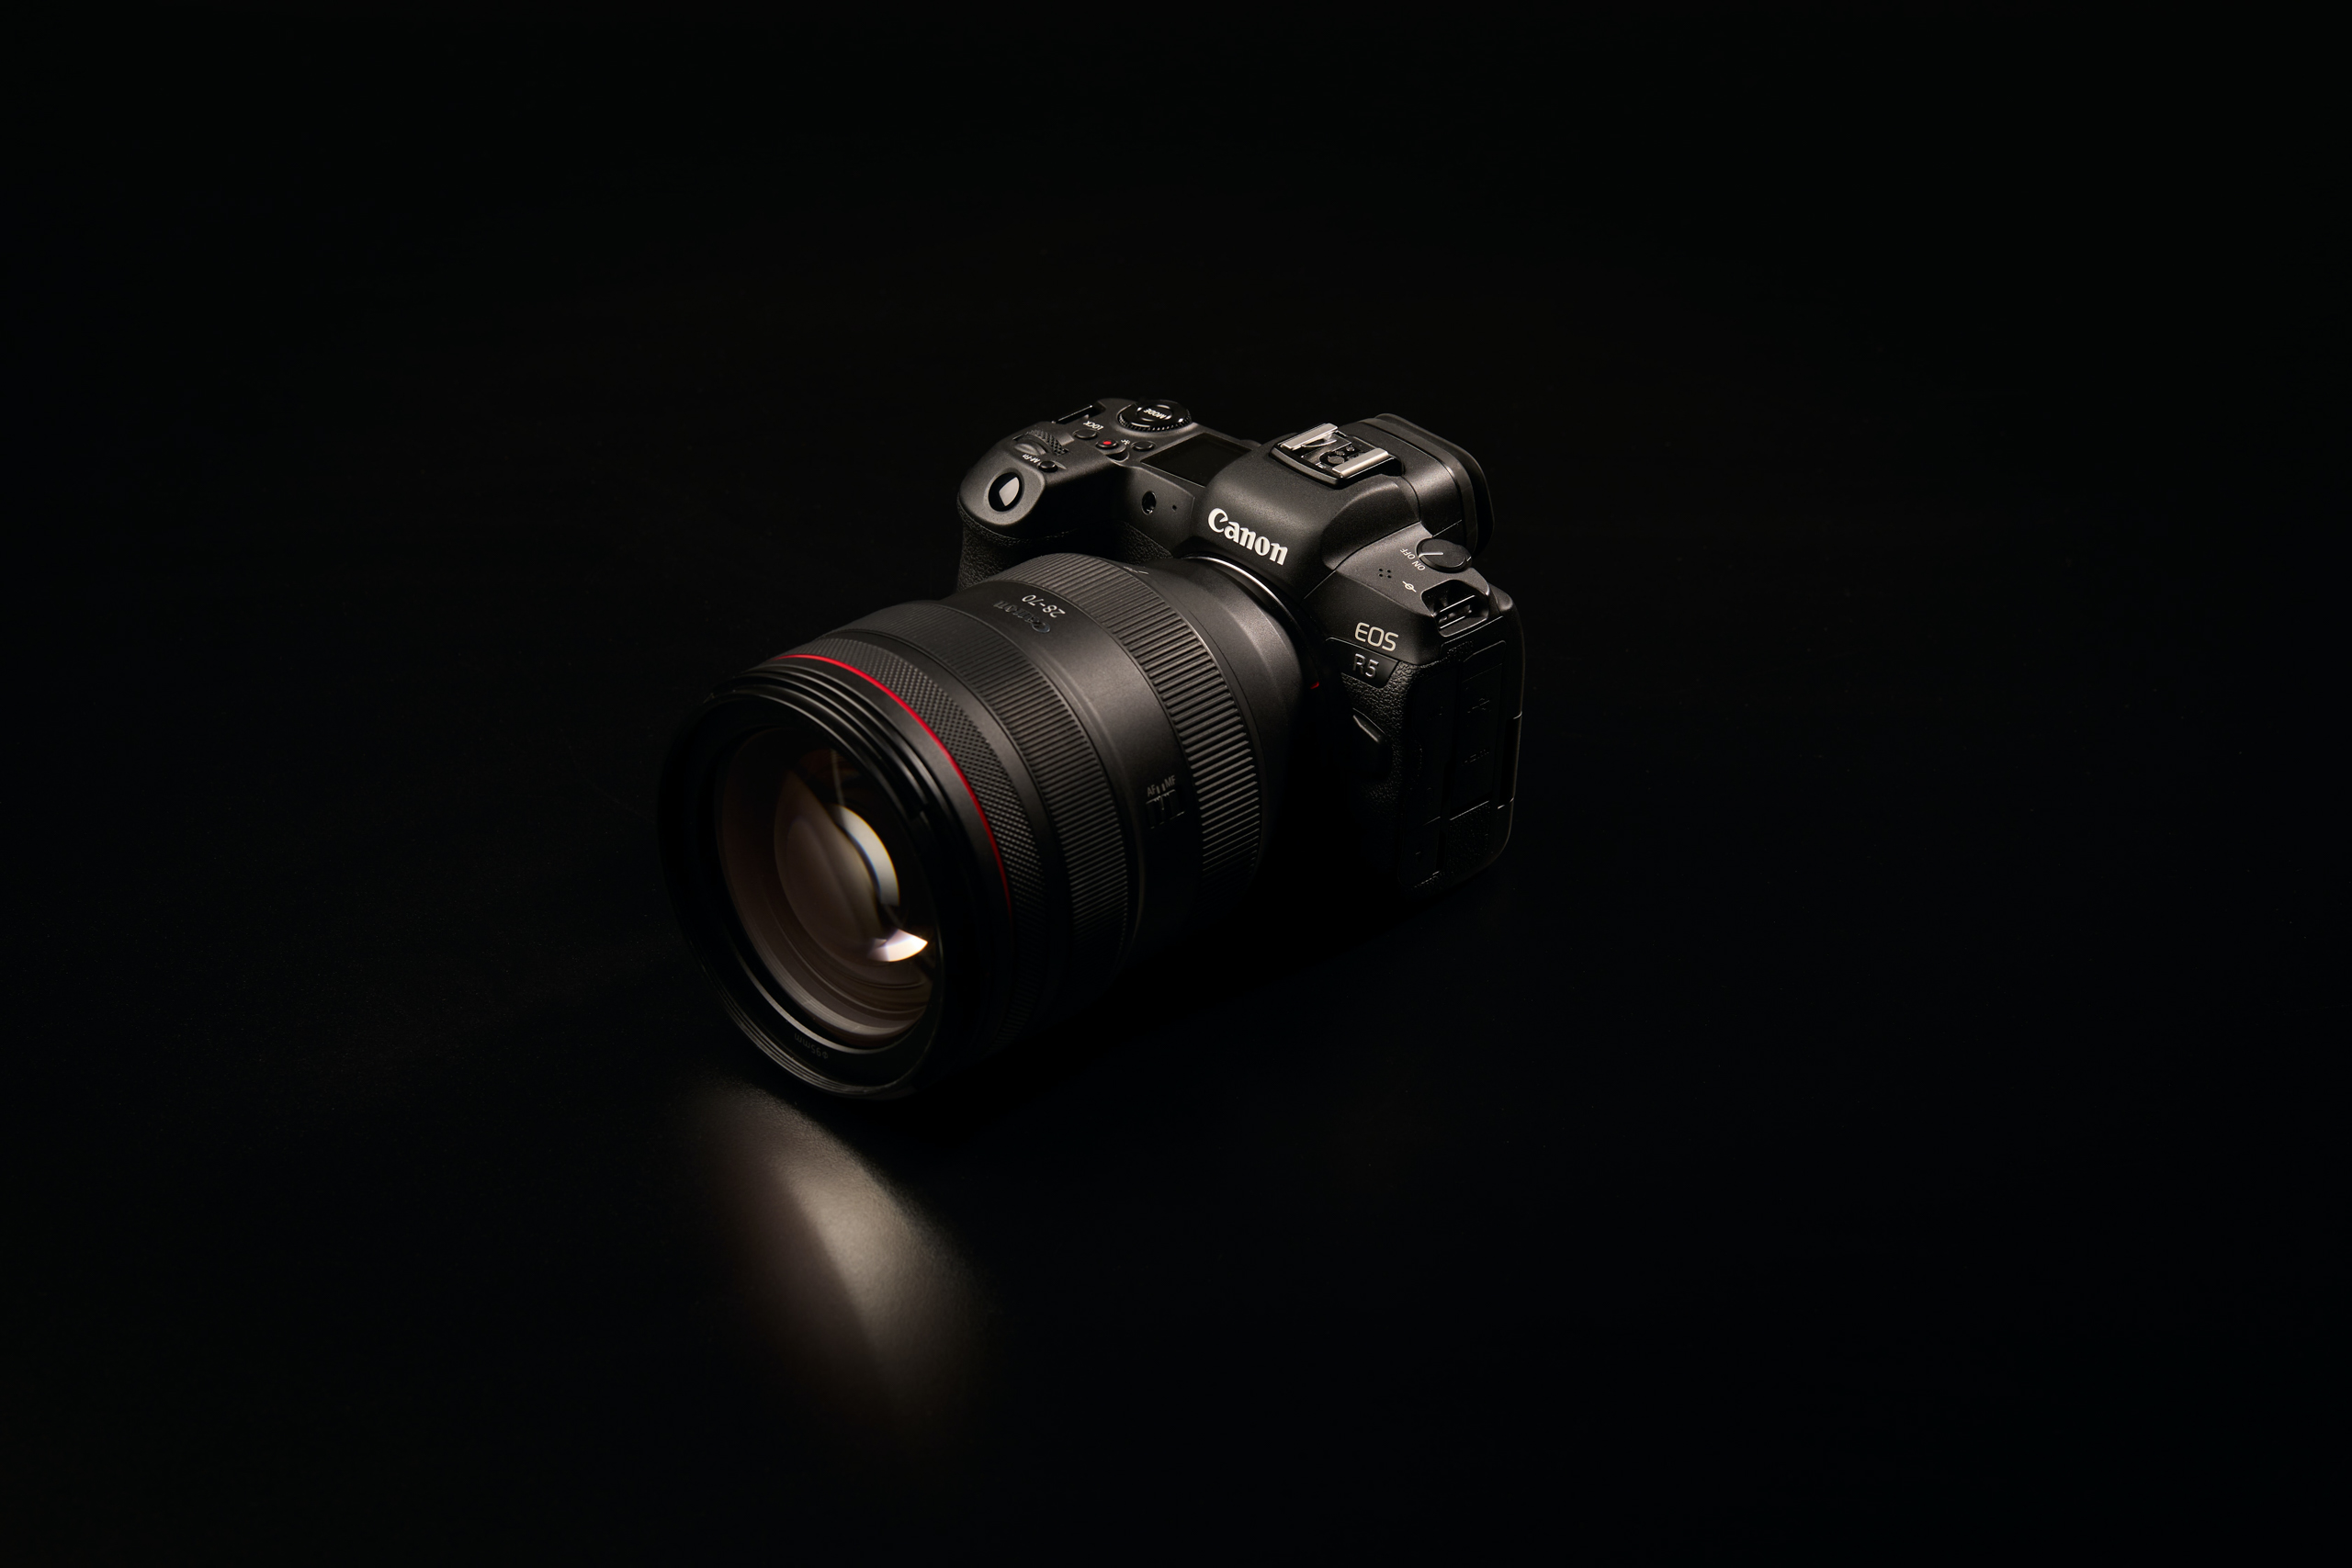 Canon số 1 thị trường máy ảnh: Khám phá trải nghiệm chụp ảnh chuyên nghiệp với Canon - thương hiệu máy ảnh số 1 trên thị trường hiện nay. Sự chính xác và công nghệ tiên tiến trong từng chi tiết giúp bạn tạo ra những bức ảnh sắc nét và chất lượng tuyệt vời.